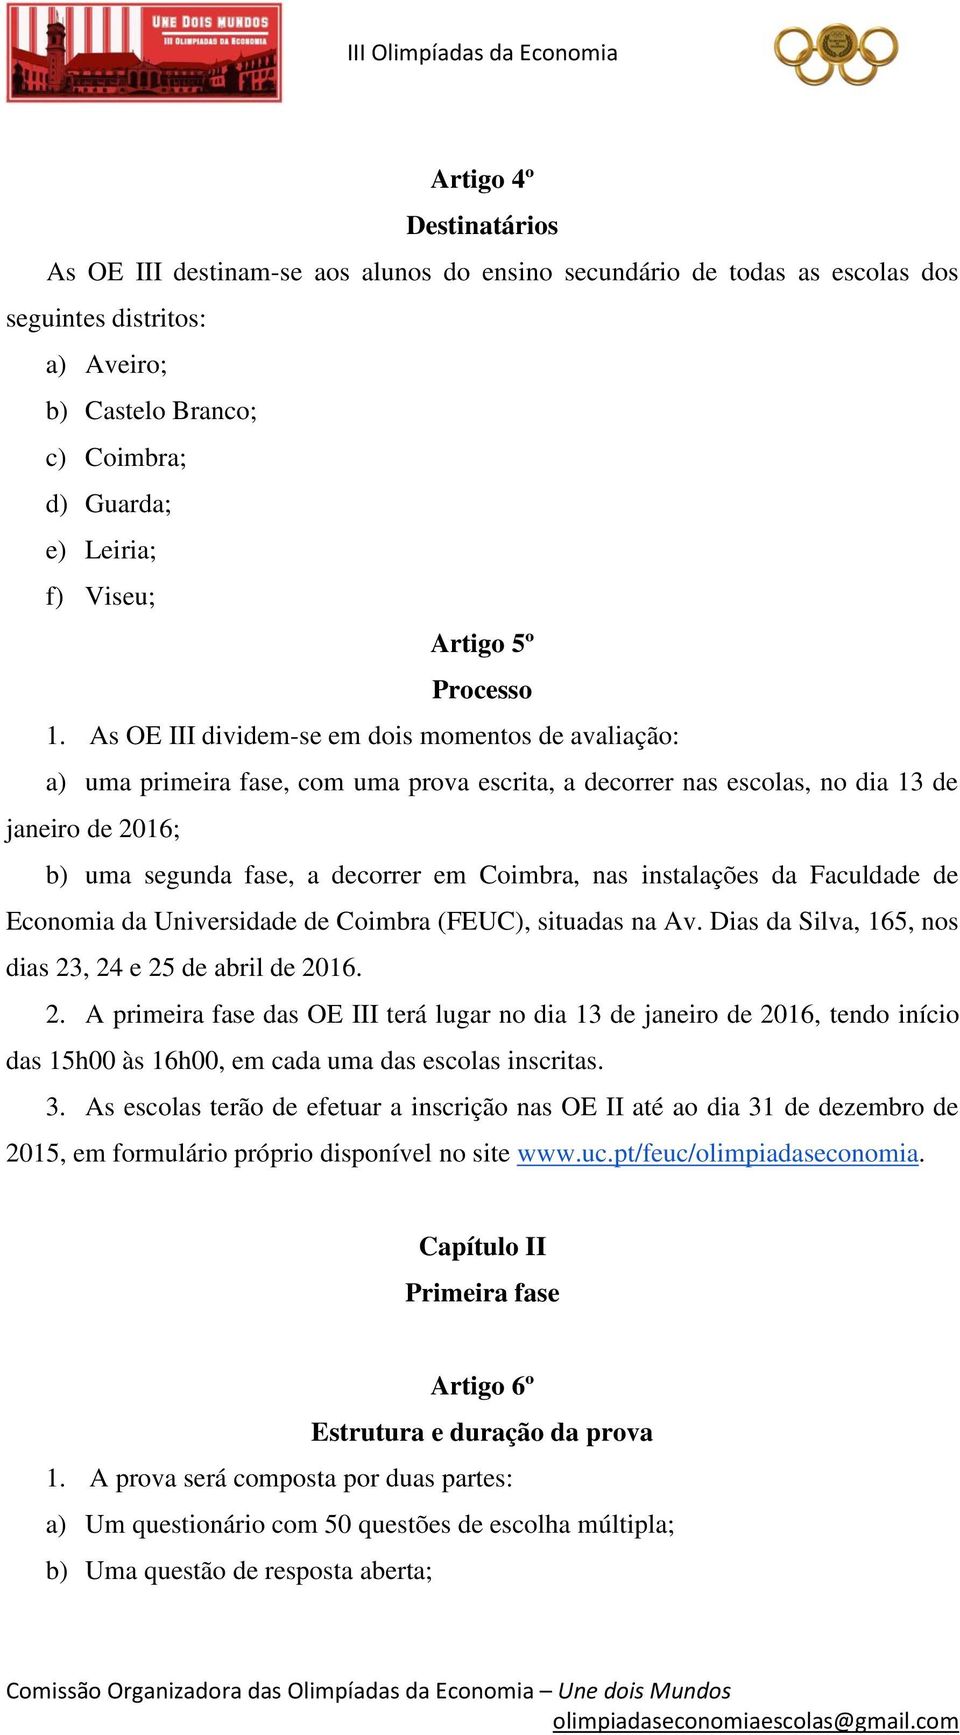 As OE III dividem-se em dois momentos de avaliação: a) uma primeira fase, com uma prova escrita, a decorrer nas escolas, no dia 13 de janeiro de 2016; b) uma segunda fase, a decorrer em Coimbra, nas